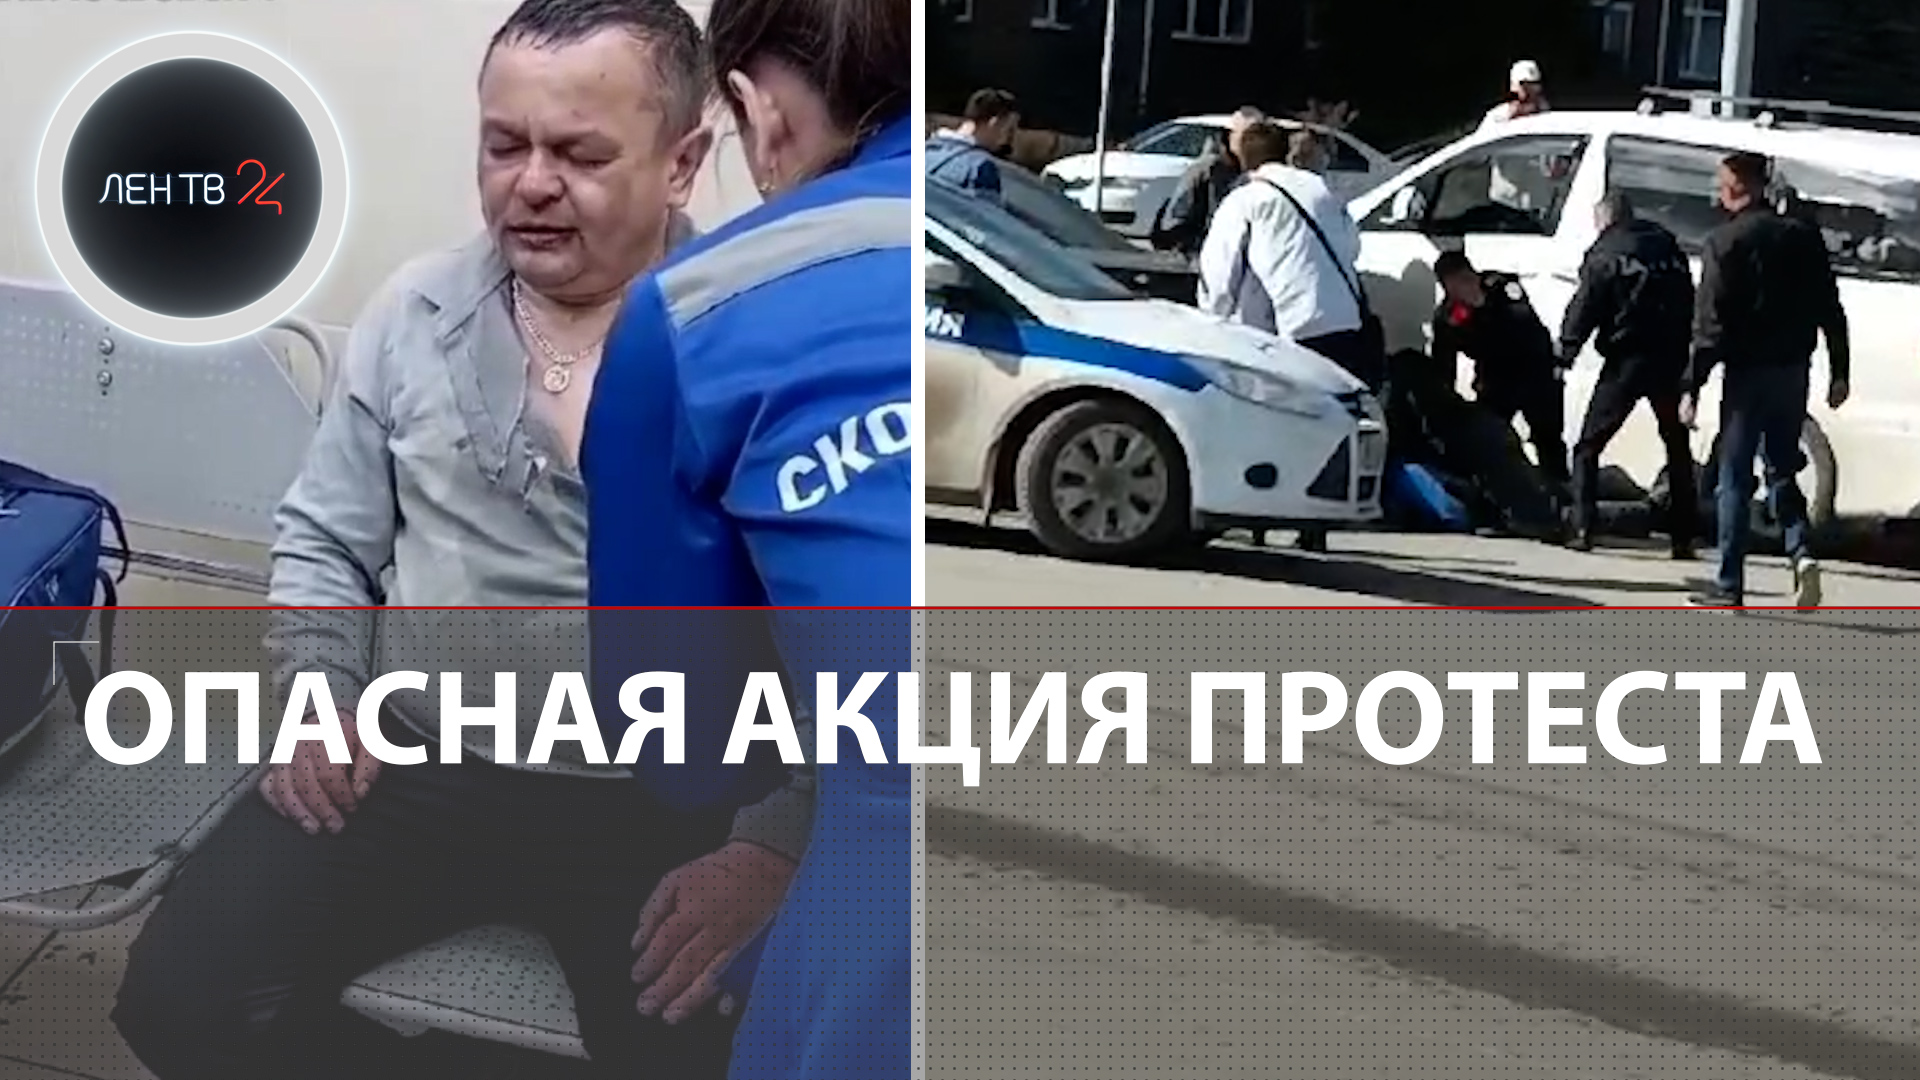 Отомстил за дочь? | В Татарстане водитель минивэна устроил странную акцию протеста